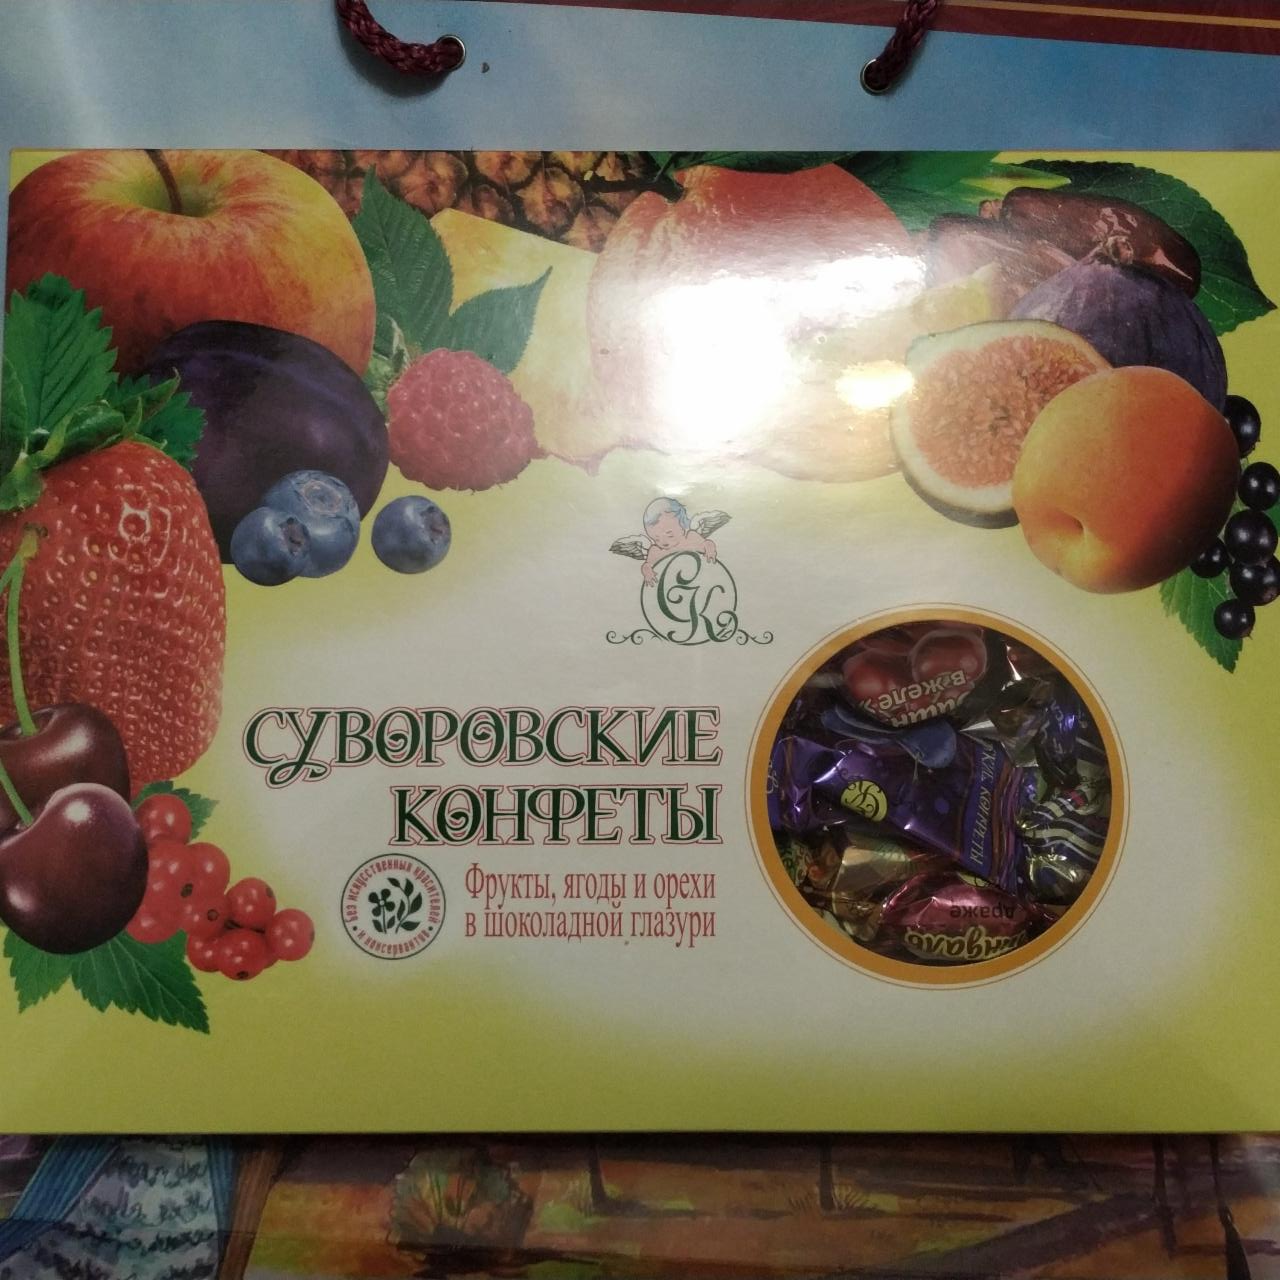 Фото - Конфеты фрукты, ягоды и орехи в шоколадной глазури Суворовские